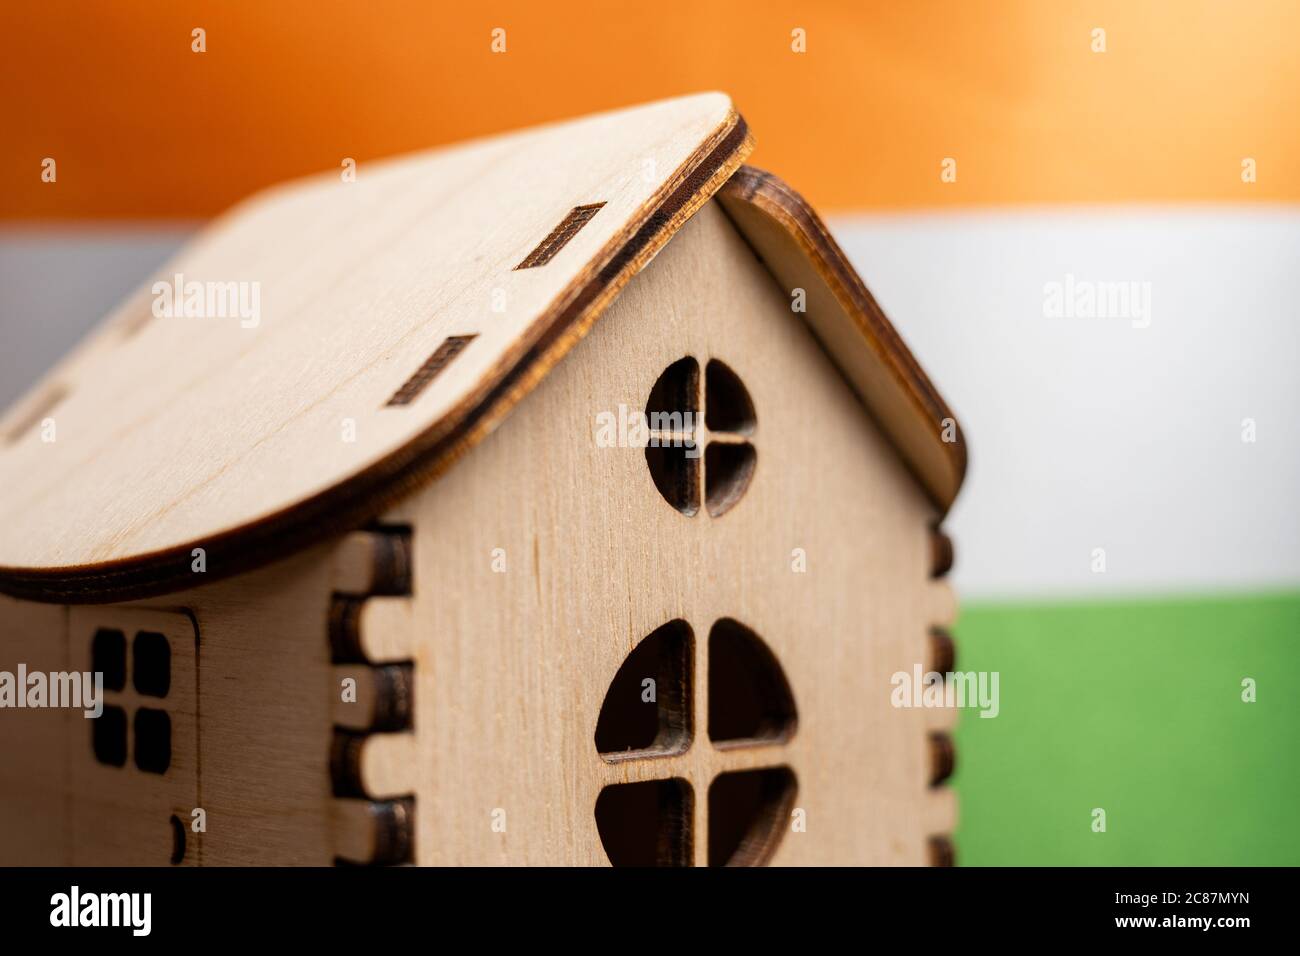 Petite maison en bois, drapeau indien sur fond. Concept immobilier, attention douce Banque D'Images